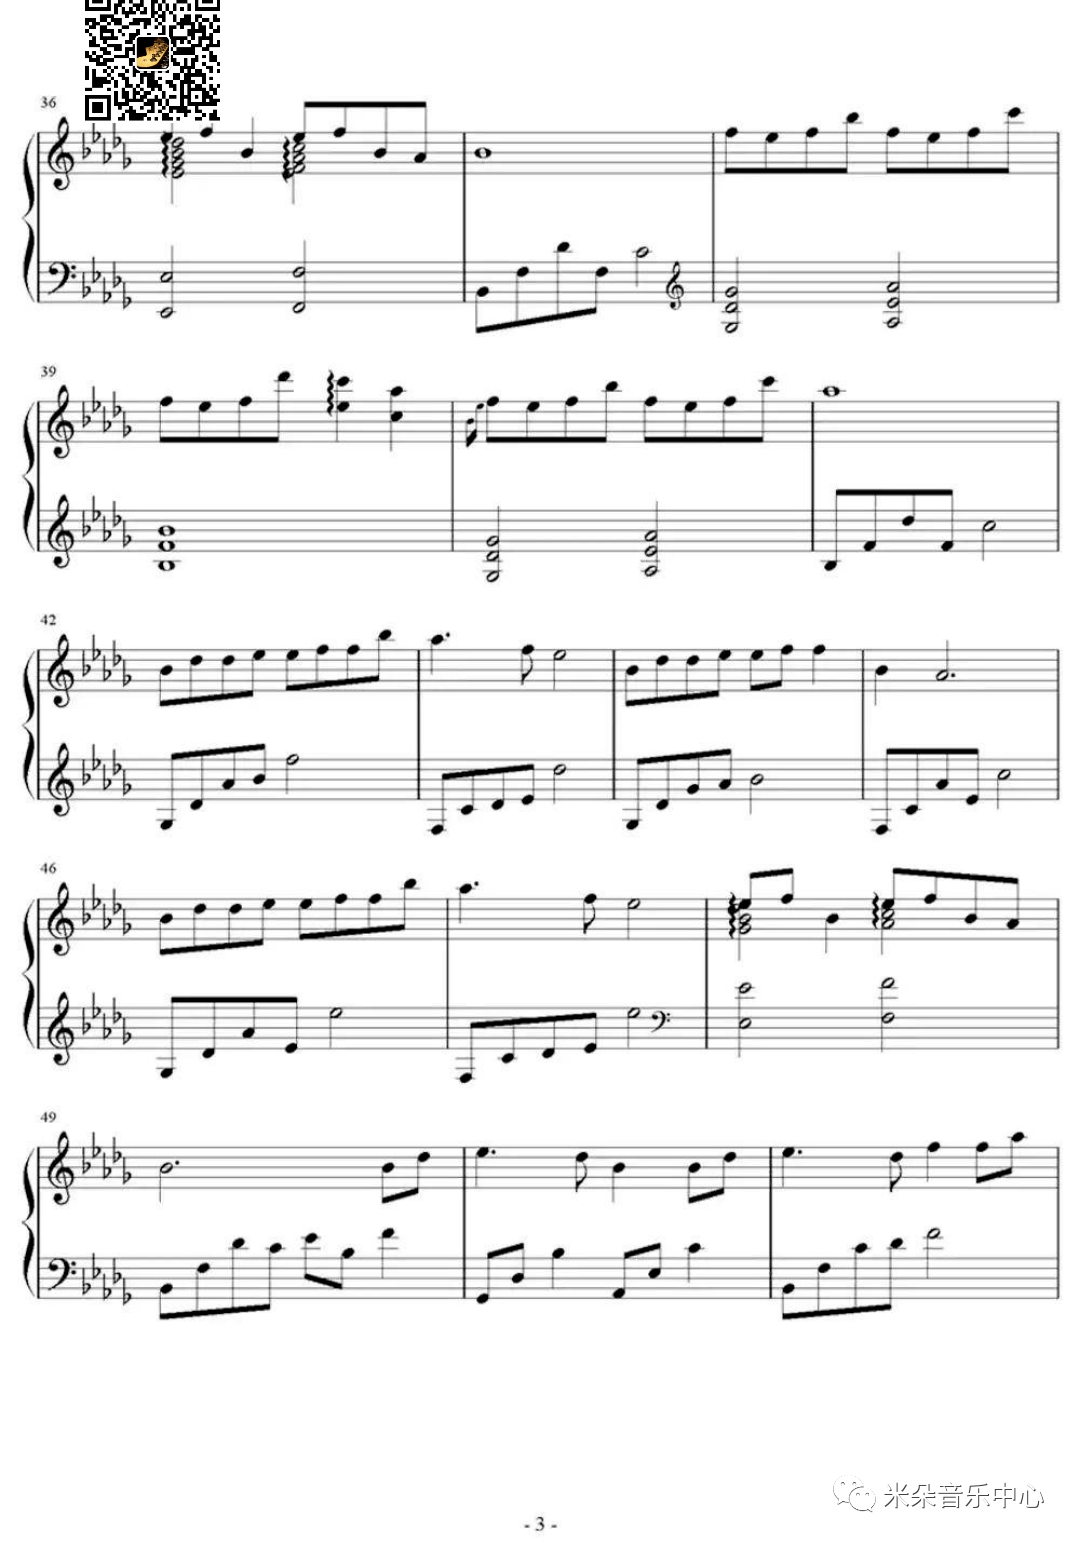 大鱼海棠/钢琴乐谱简单版 难度版